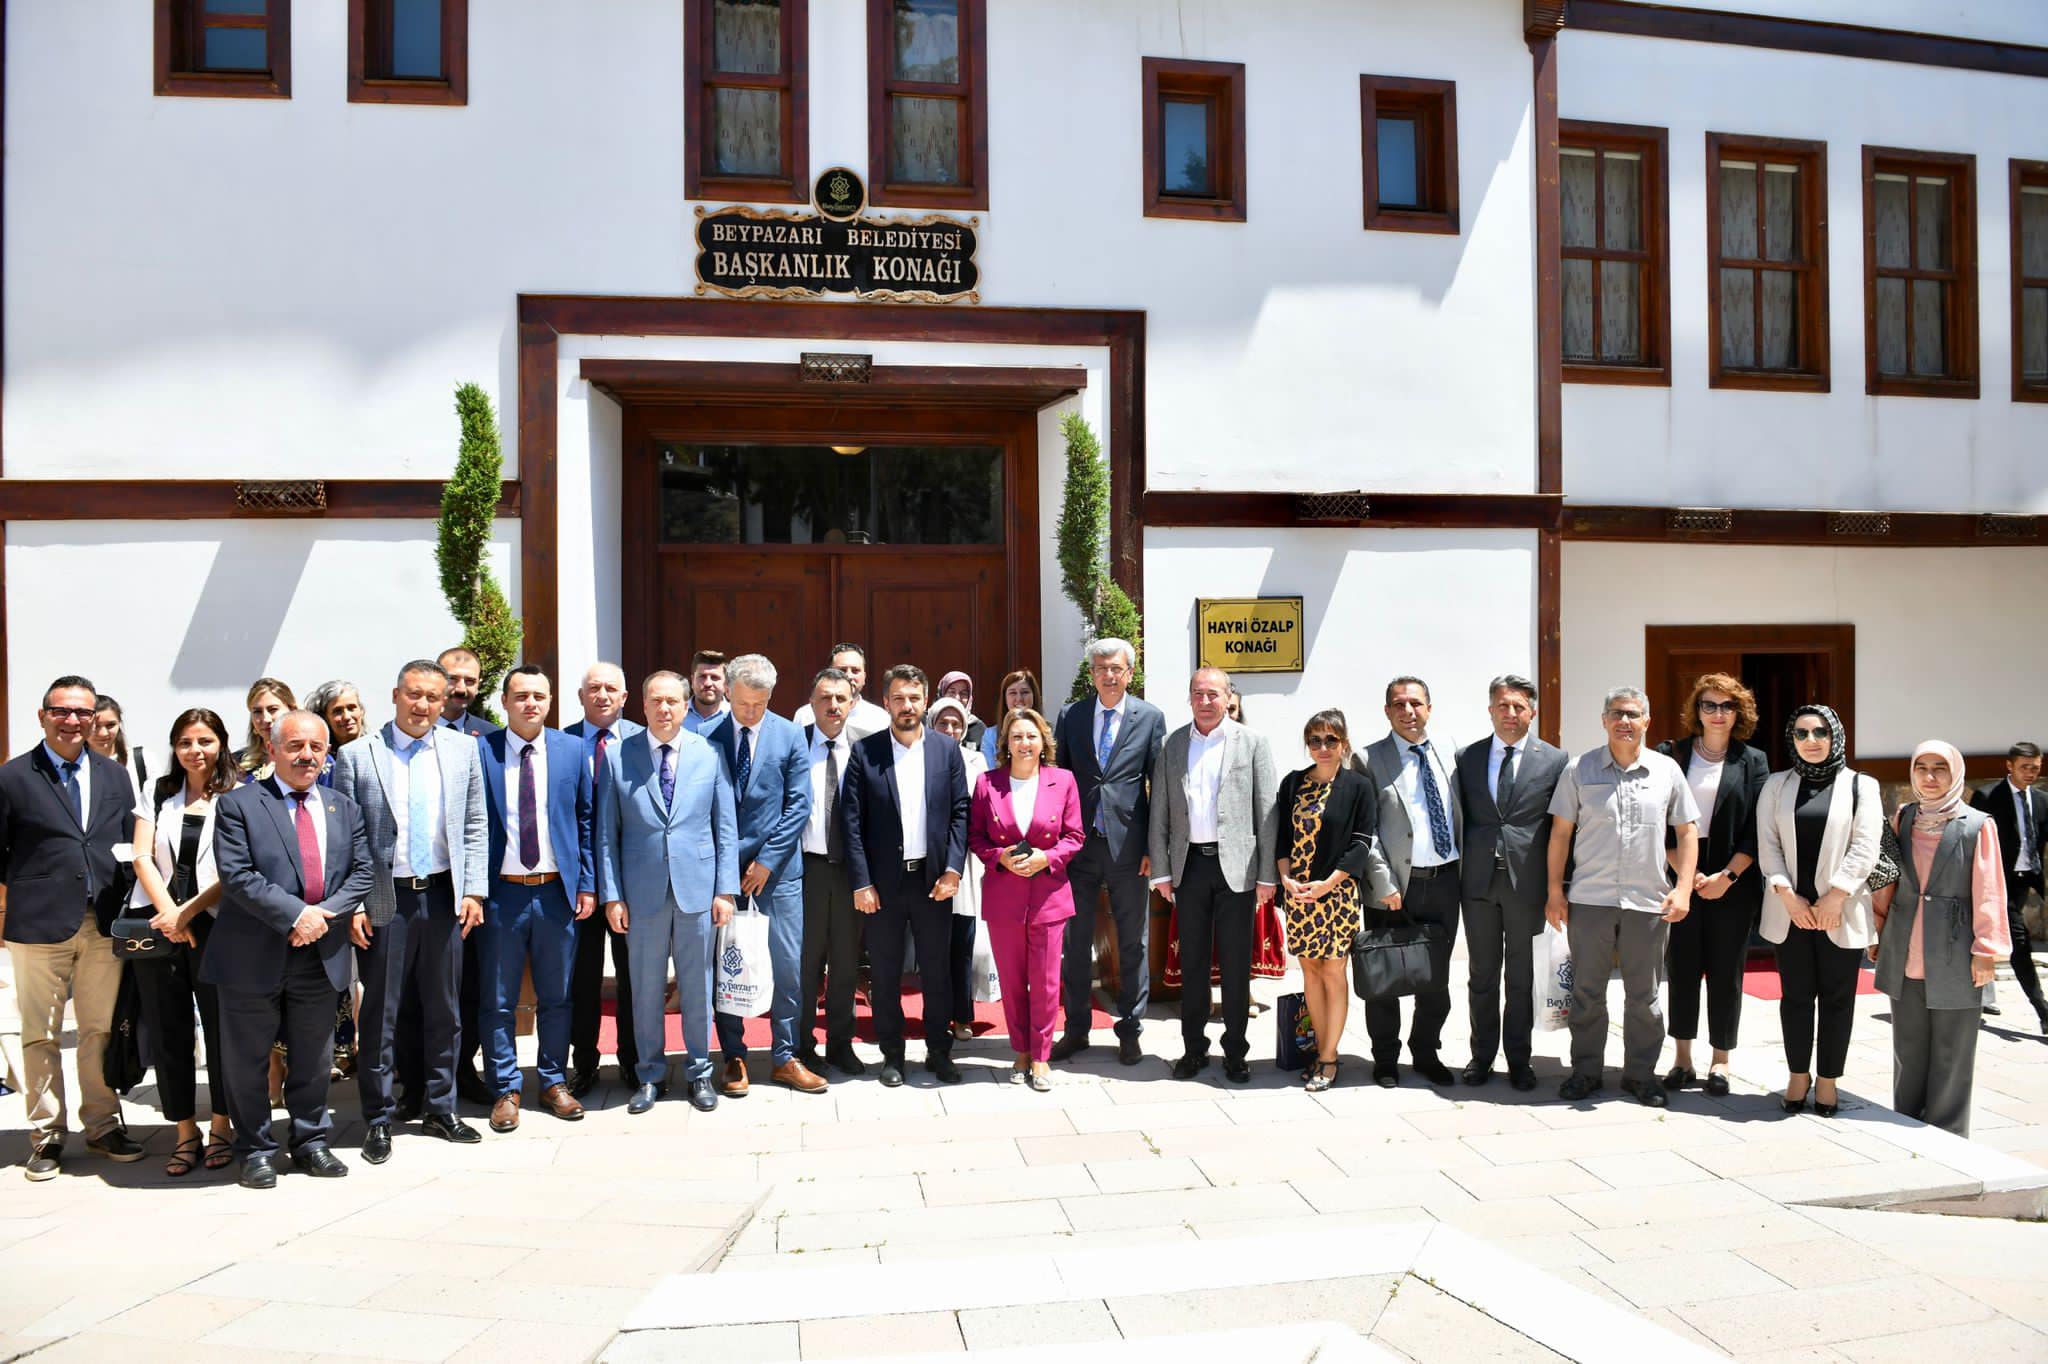 Birlik Başkanımız Sayın Murat Kaya Beypazarı'nda UNESCO çalıştayına katıldı.